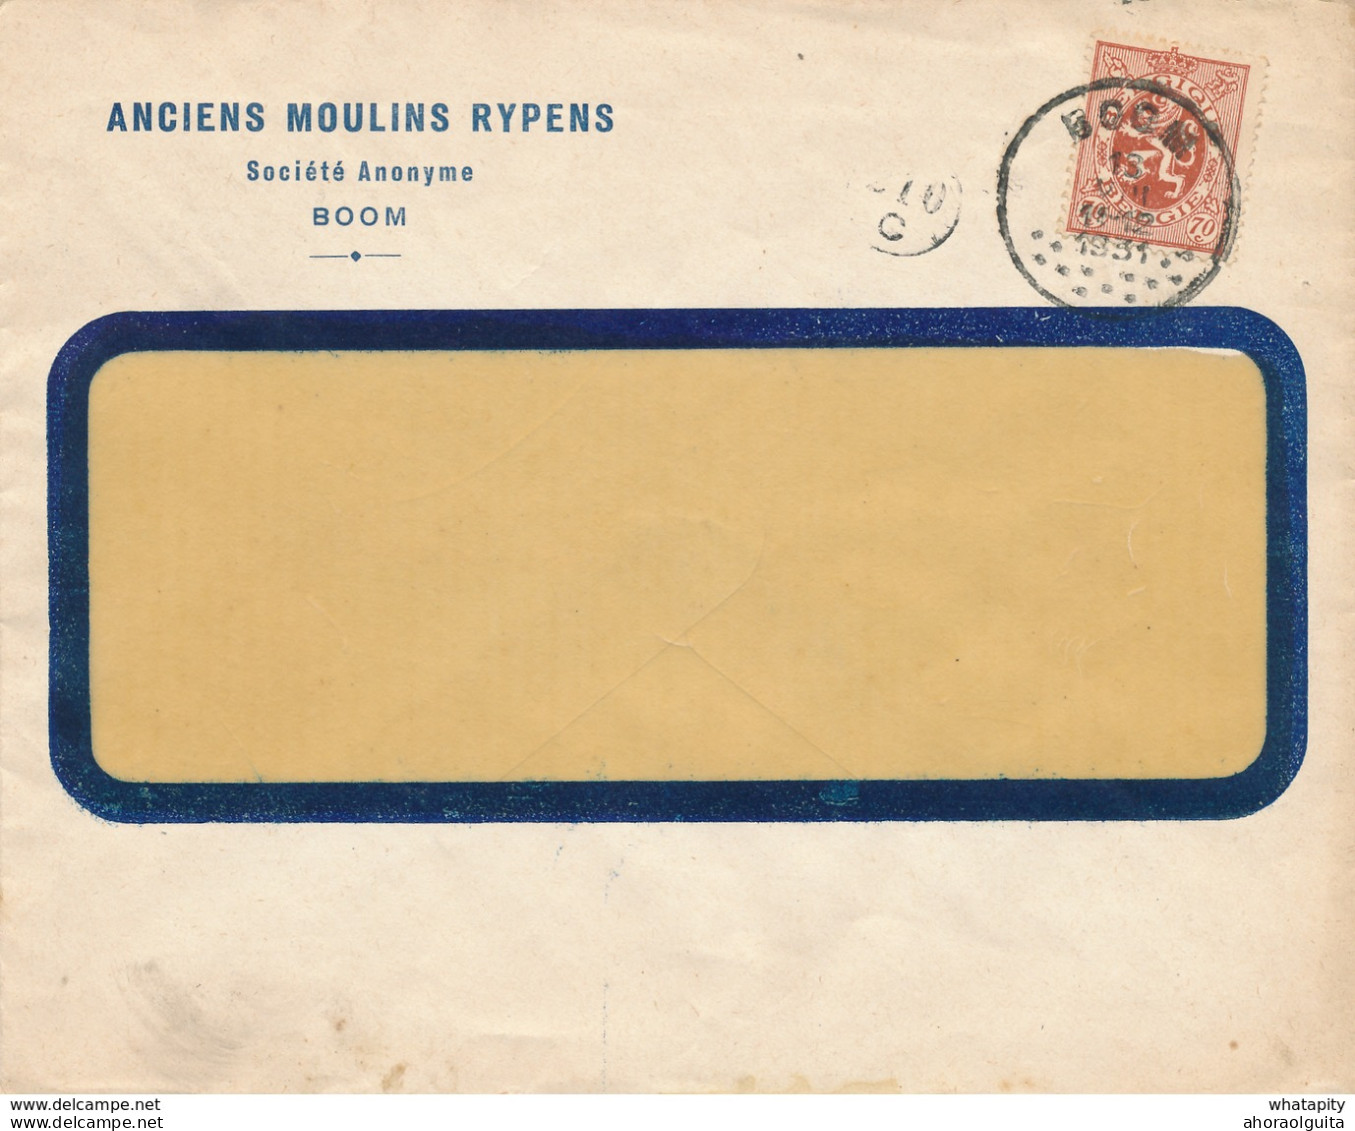 270/28 - Enveloppe TP 287 Lion Héraldique BOOM 1931 Vers BXL - Entete Anciens Moulins Rypens S.A. - 1929-1937 Lion Héraldique